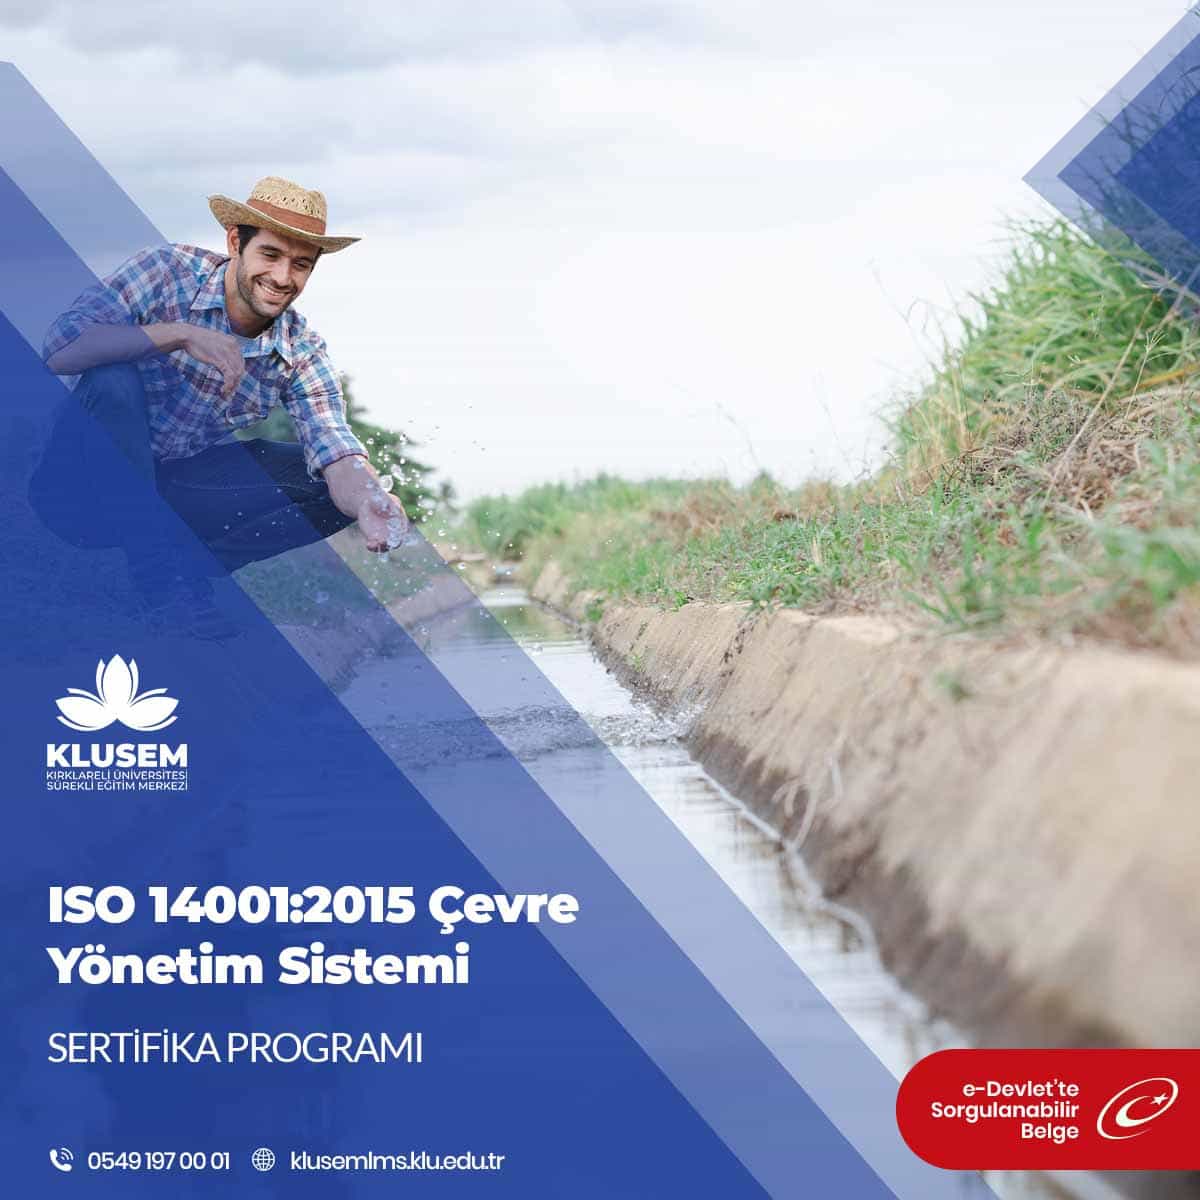 ISO 14001:2015 Çevre Yönetim Sistemi Sertifika Programı